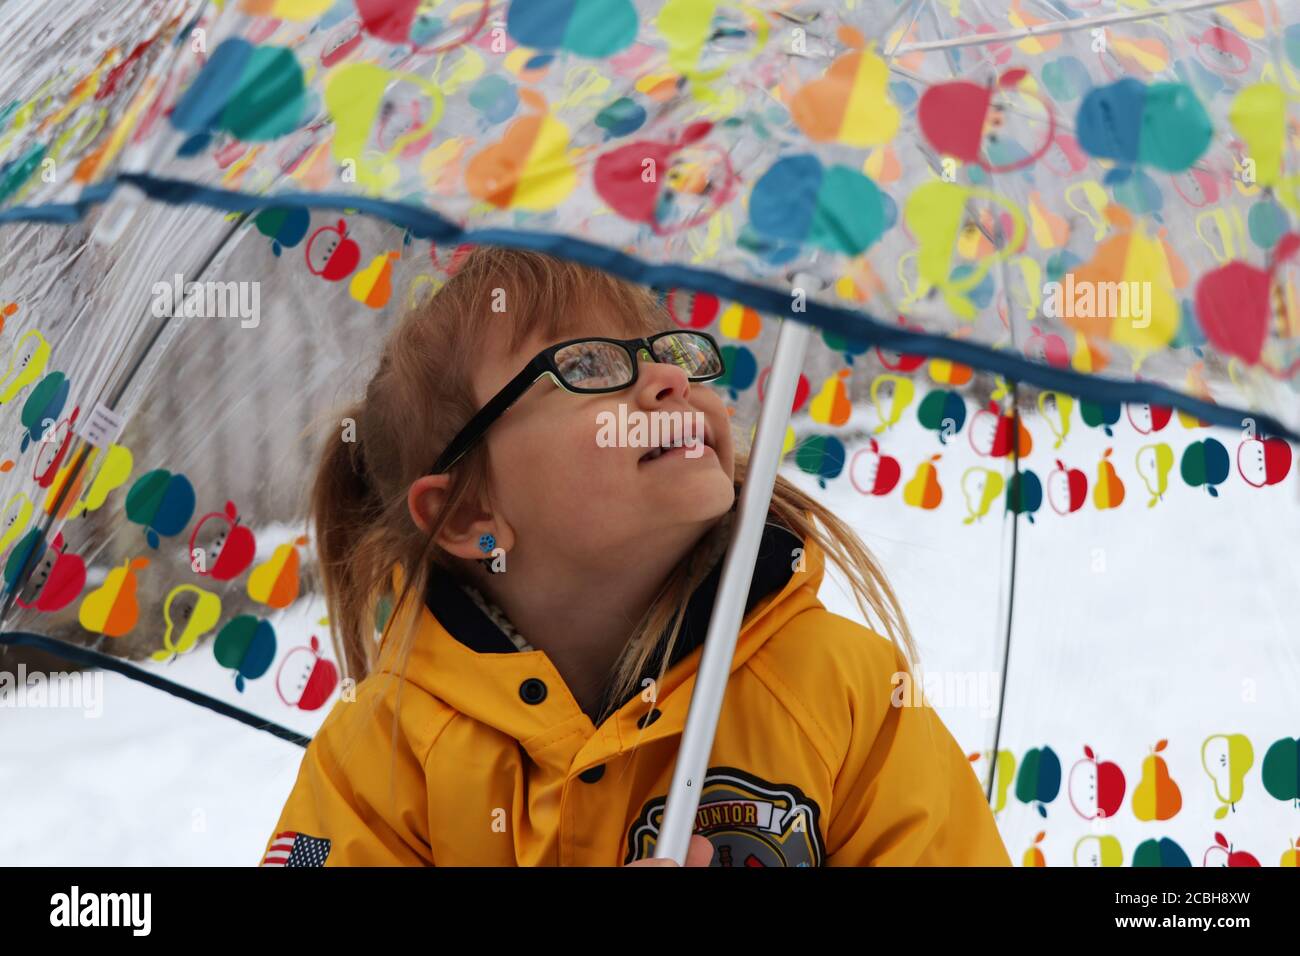 Child under umbrella in snow Stock Photo